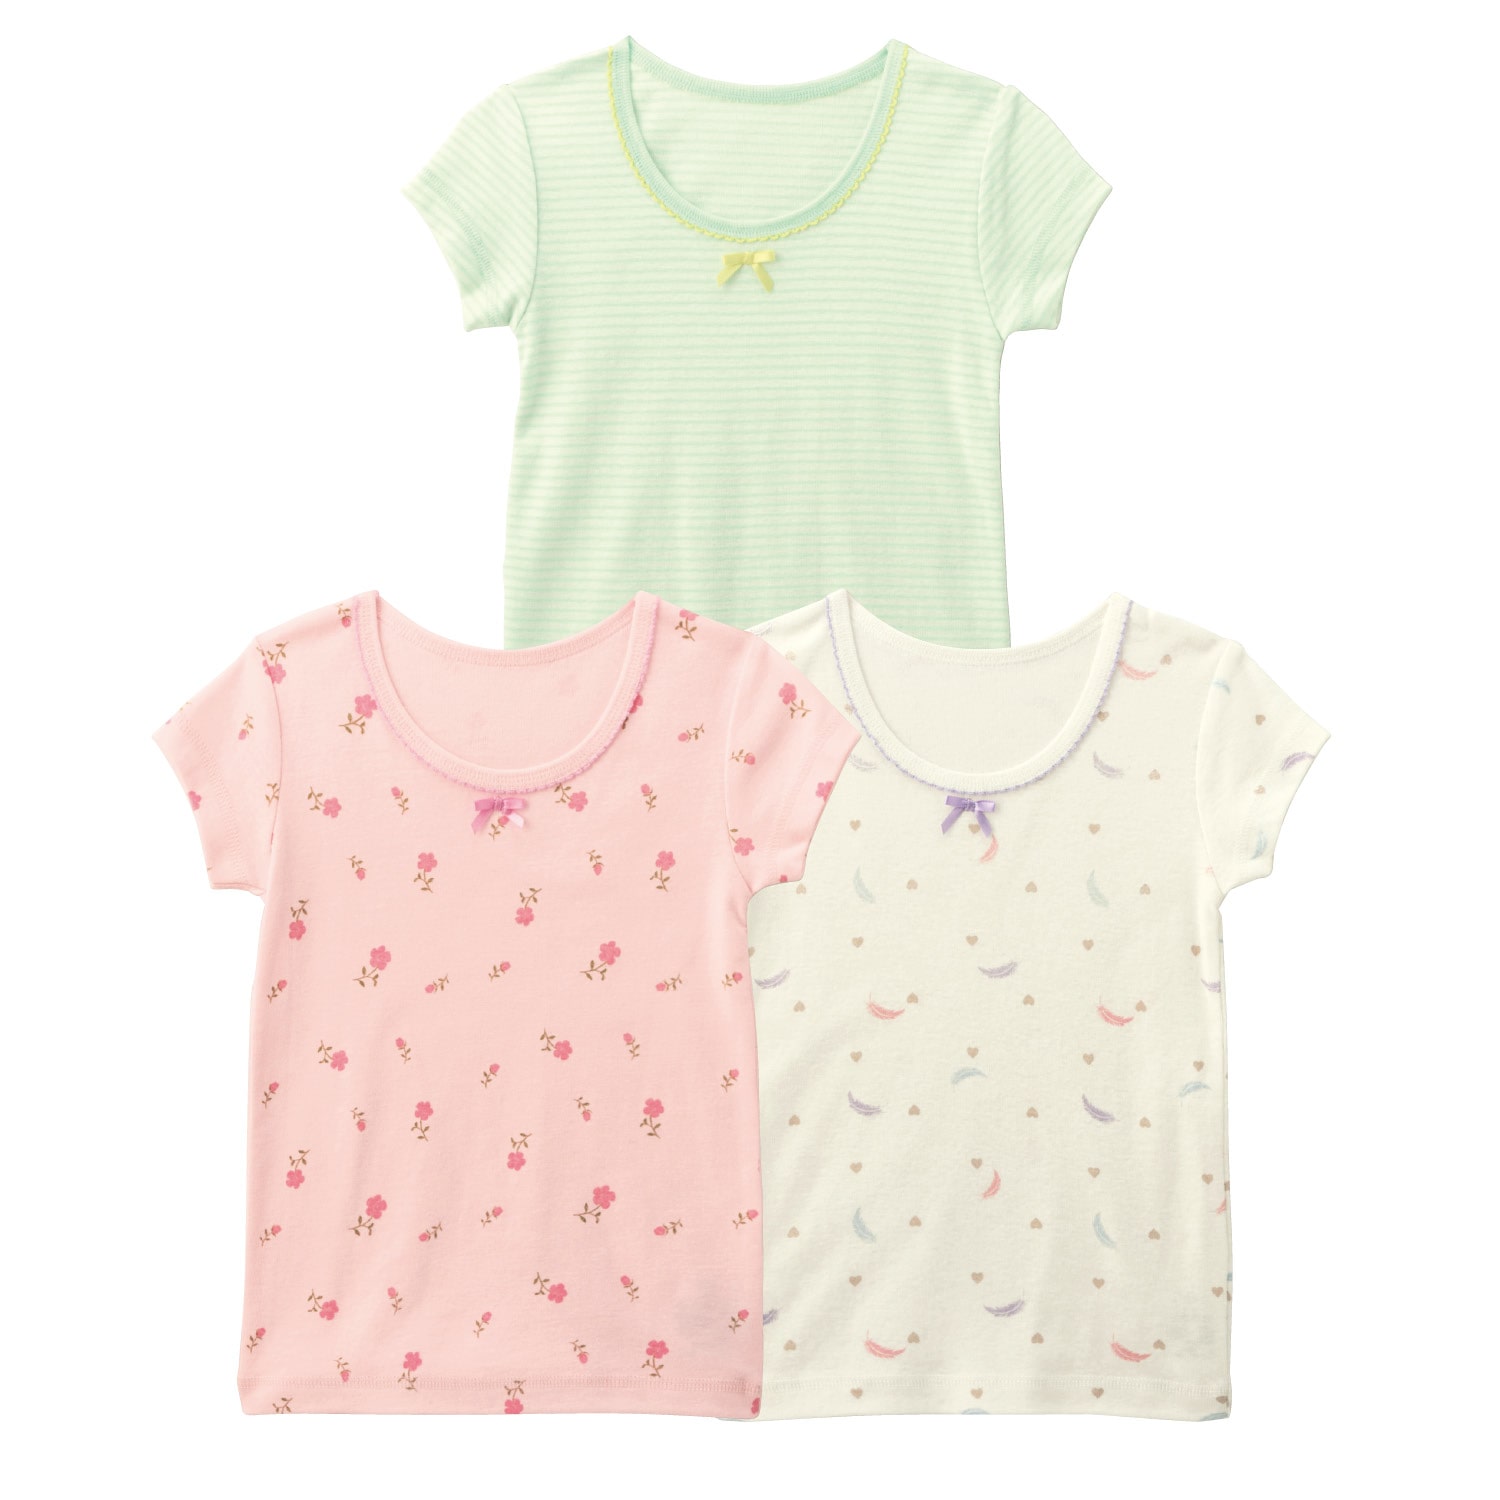 ベルメゾン 前コッチ選べるガーリープリント半袖Tシャツ(インナー)3柄セット ピンク花柄セット 100